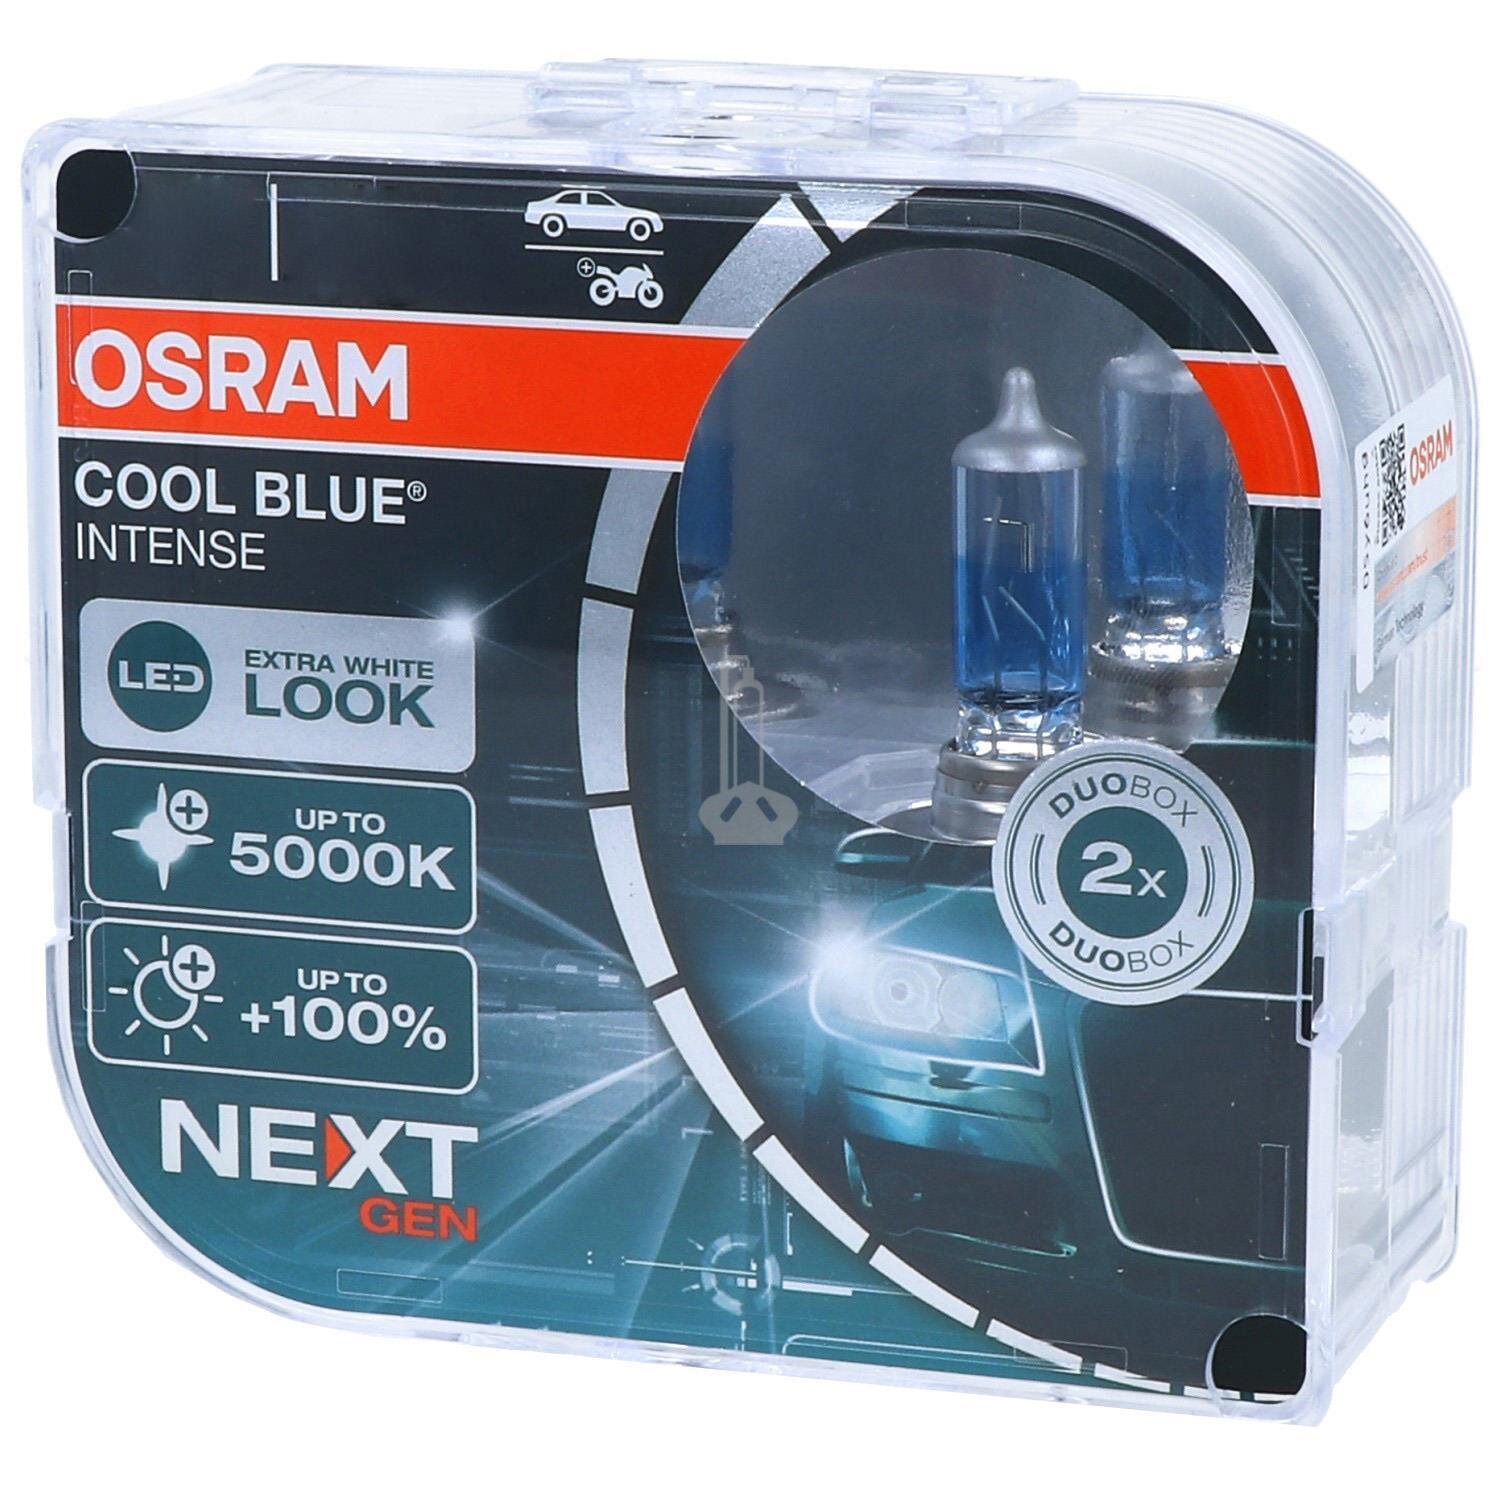 OSRAM Cool Blue Intense (NEXT GEN) - Das extra weiße Licht, 7,70 €